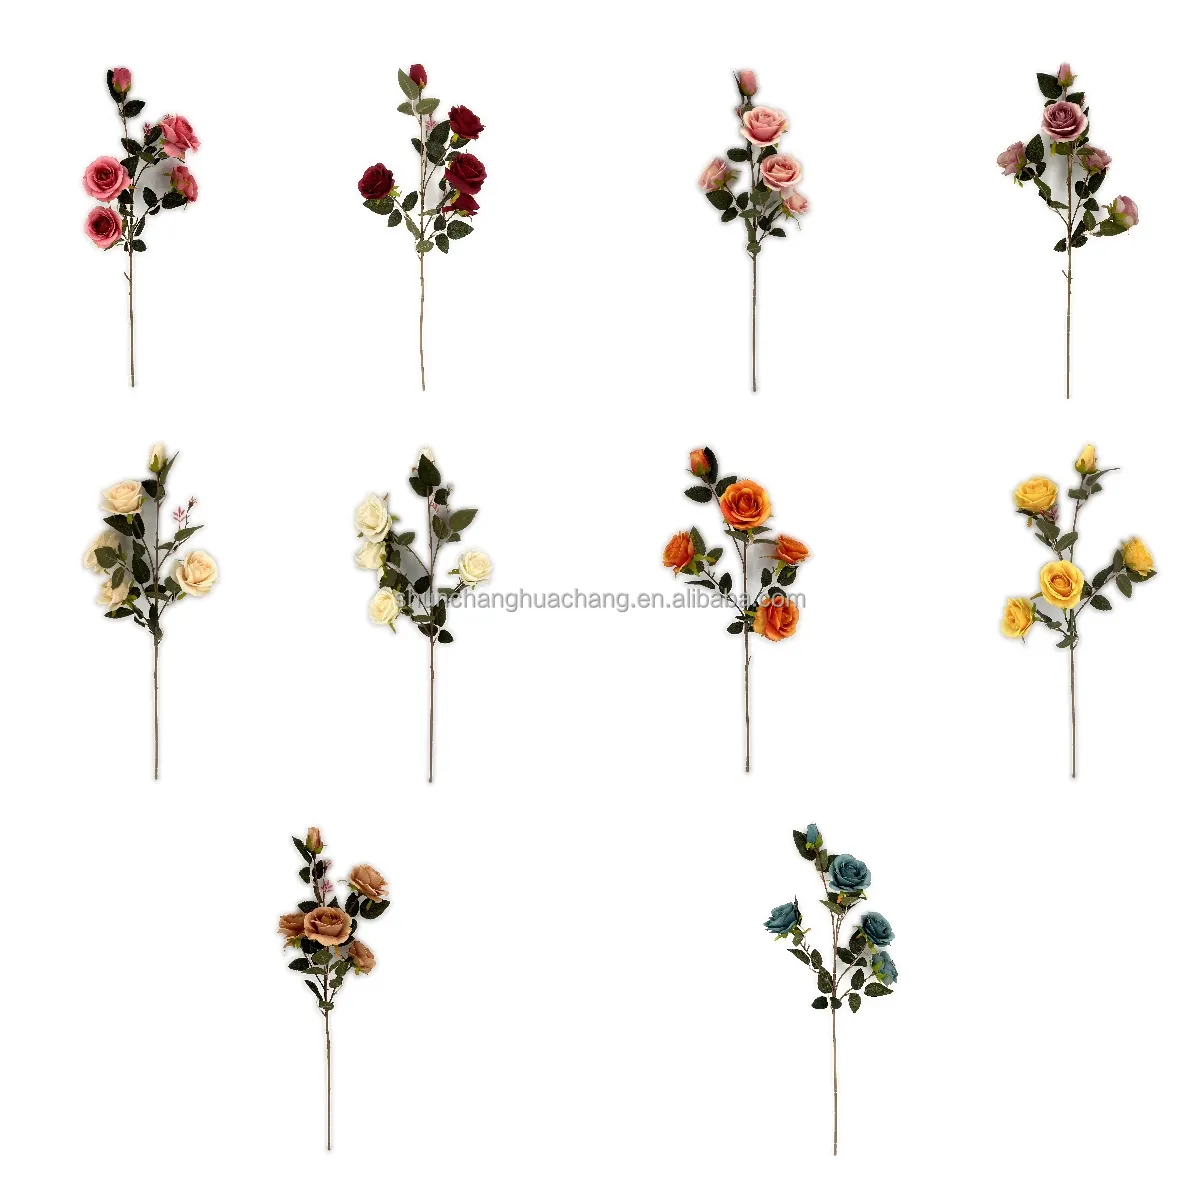 Einzelne 5 Köpfe Rosa Grandiflora About Face Herbst farbe Künstliche Blumen für Dekoration/Zuhause/Hochzeit/Hotel/Event/Festival